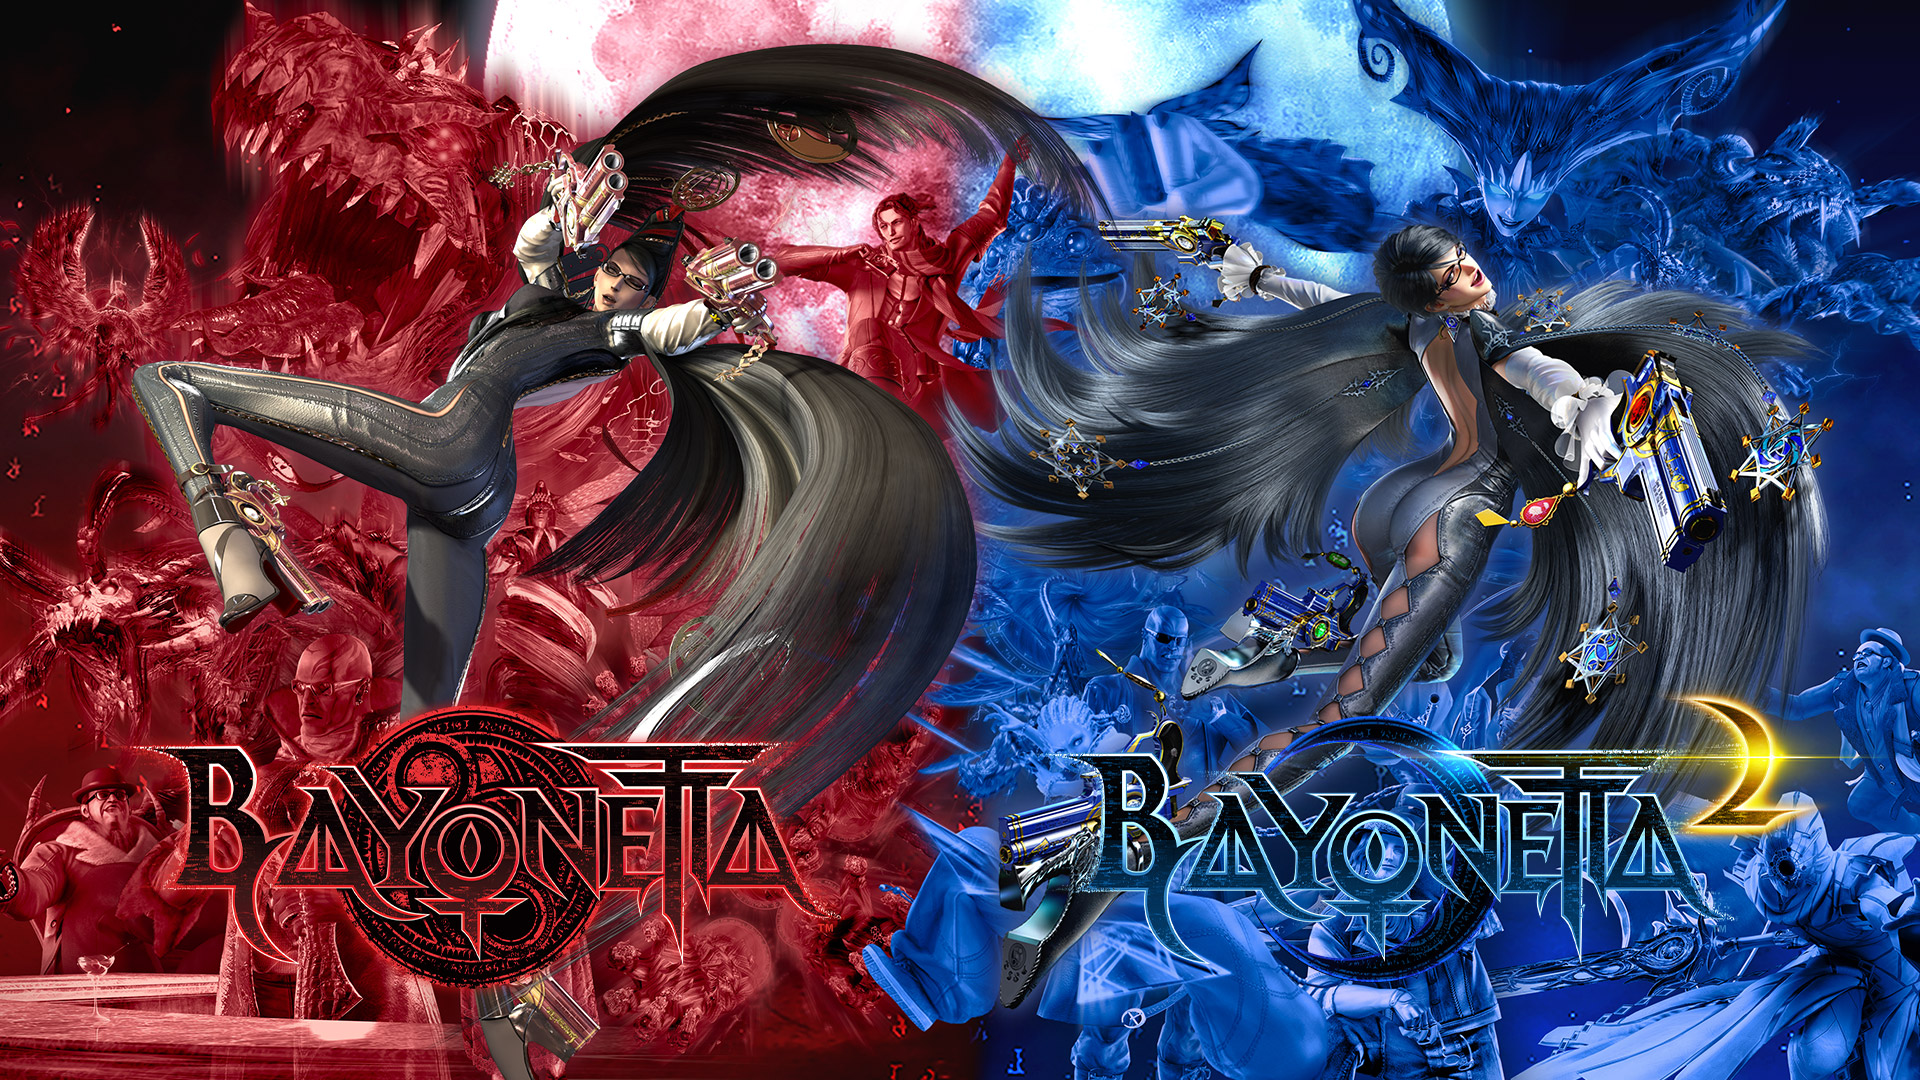 公布盒装版《猎天使魔女 2》(Bayonetta 2)的发售日!《猎天使魔女 魔兵惊天录》(Bayonetta)及《猎天使魔女2》(Bayonetta 2) 现正接受预订。